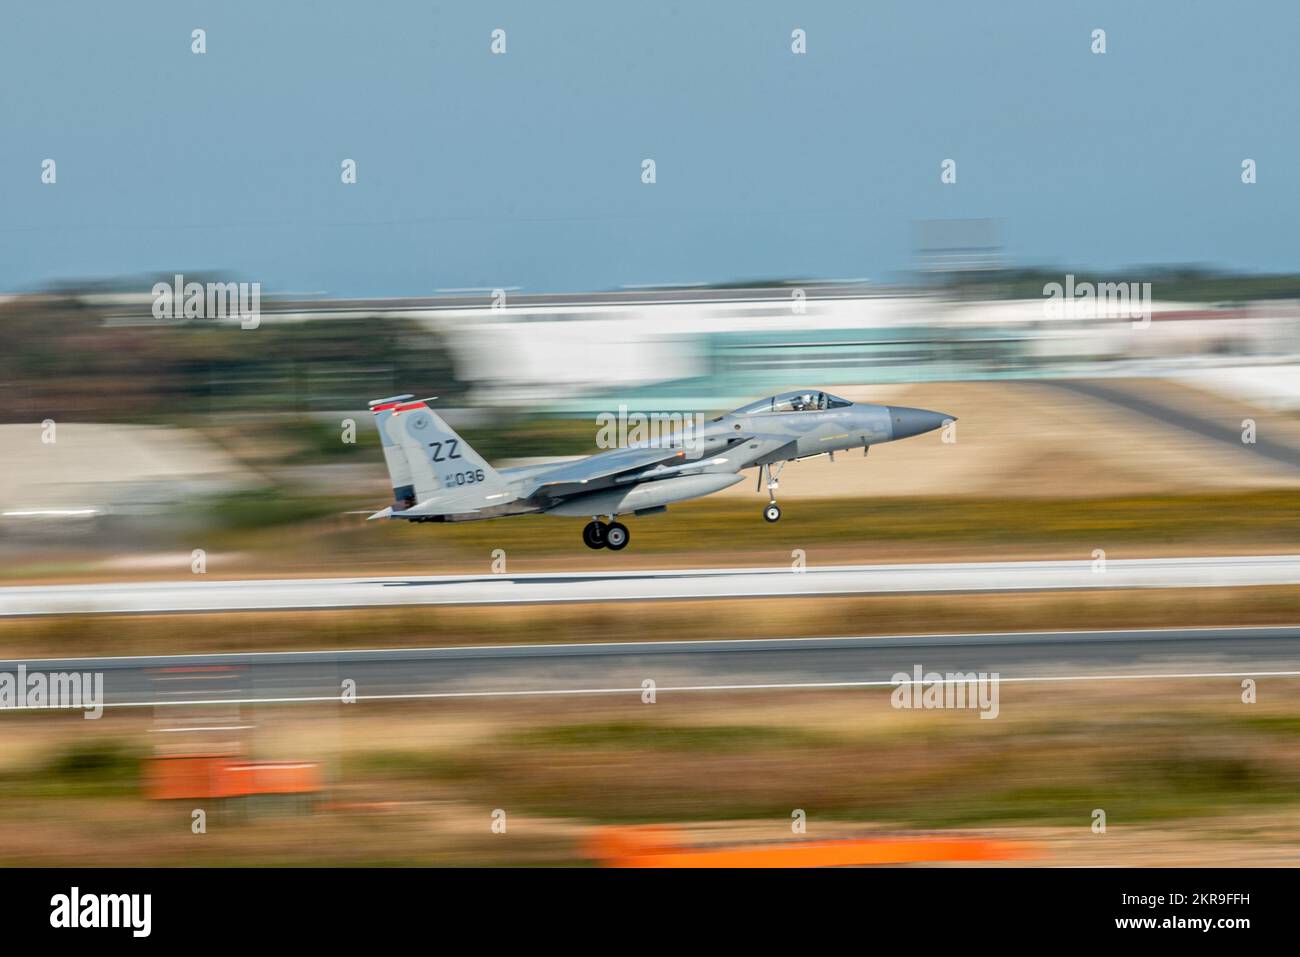 A ÉTATS-UNIS L'aigle F-15C de la Force aérienne affecté à l'escadron de chasseurs 67th prend son envol pendant le programme de réinstallation de l'entraînement aérien à la base aérienne de Tsuiki de la Force d'autodéfense aérienne du Japon, Fukuoka (Japon), le 10 novembre 2022. Le programme de relocalisation de la formation à l'aviation a permis aux forces américaines et de la JASDF de renforcer les relations et de développer la confiance mutuelle, ce qui a finalement permis de renforcer l'Alliance de sécurité entre les États-Unis et le Japon. Banque D'Images